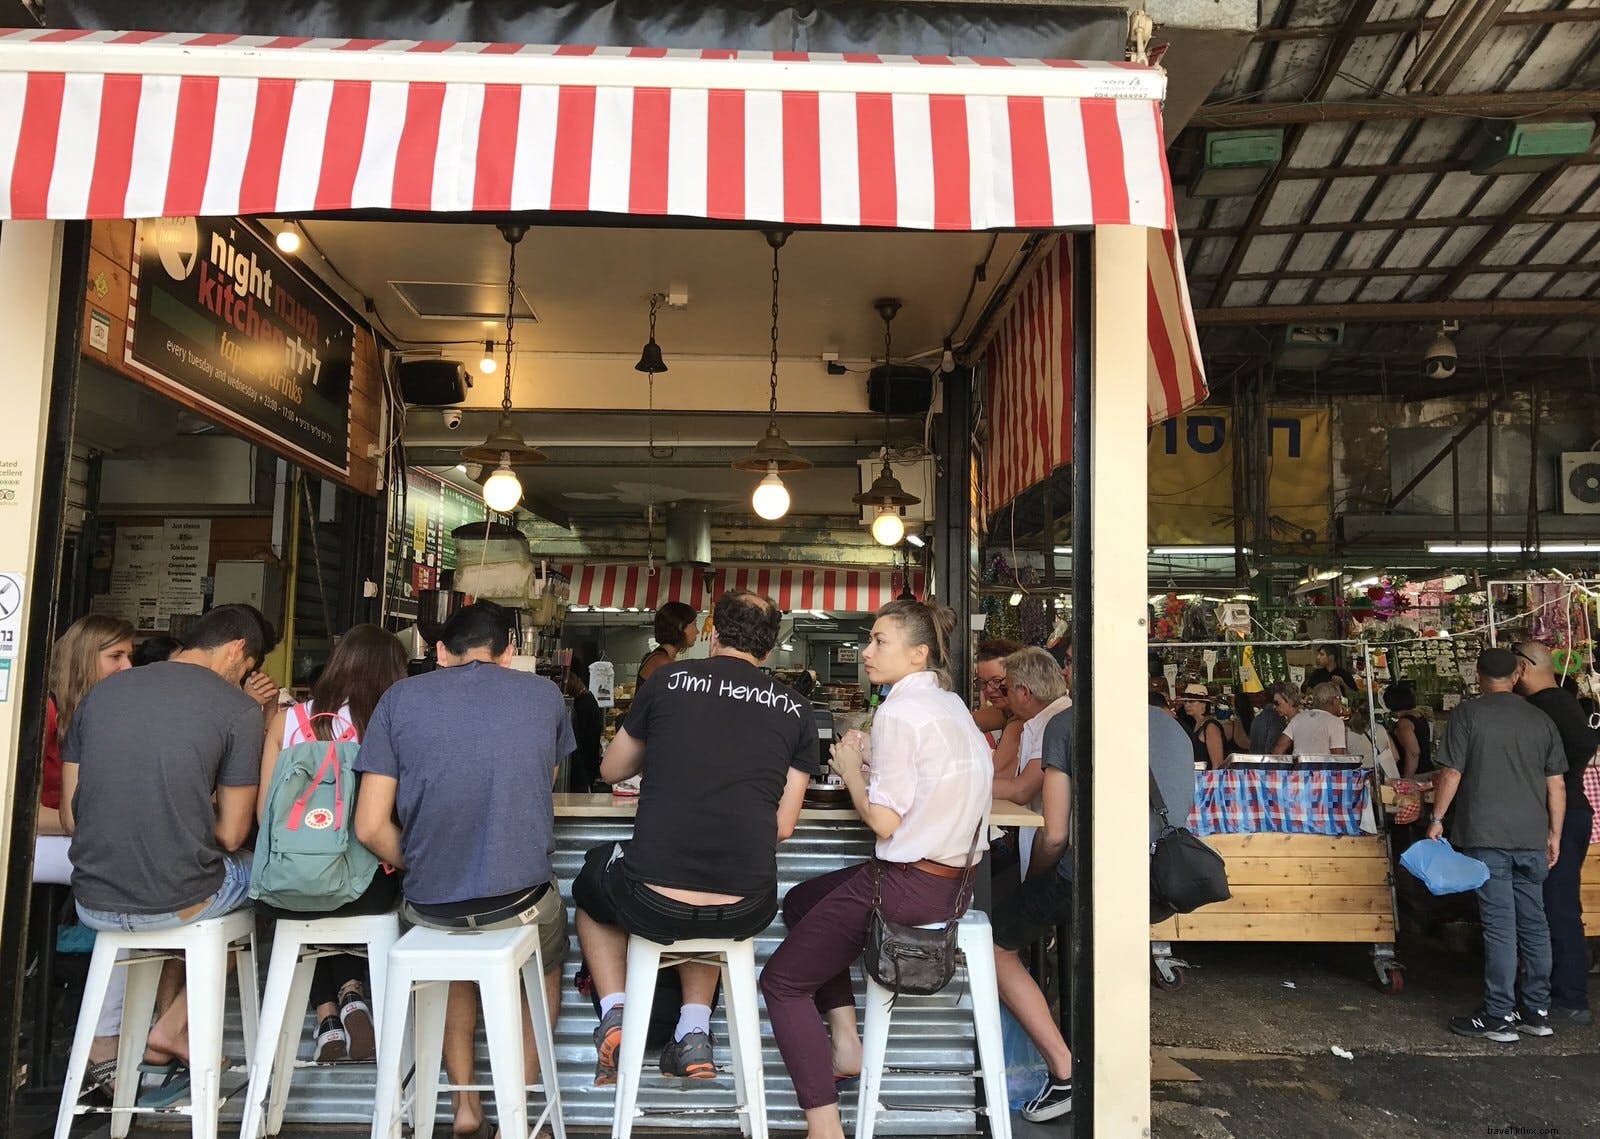 Market to table:luoghi imperdibili dentro e intorno ai mercati di Tel Aviv 